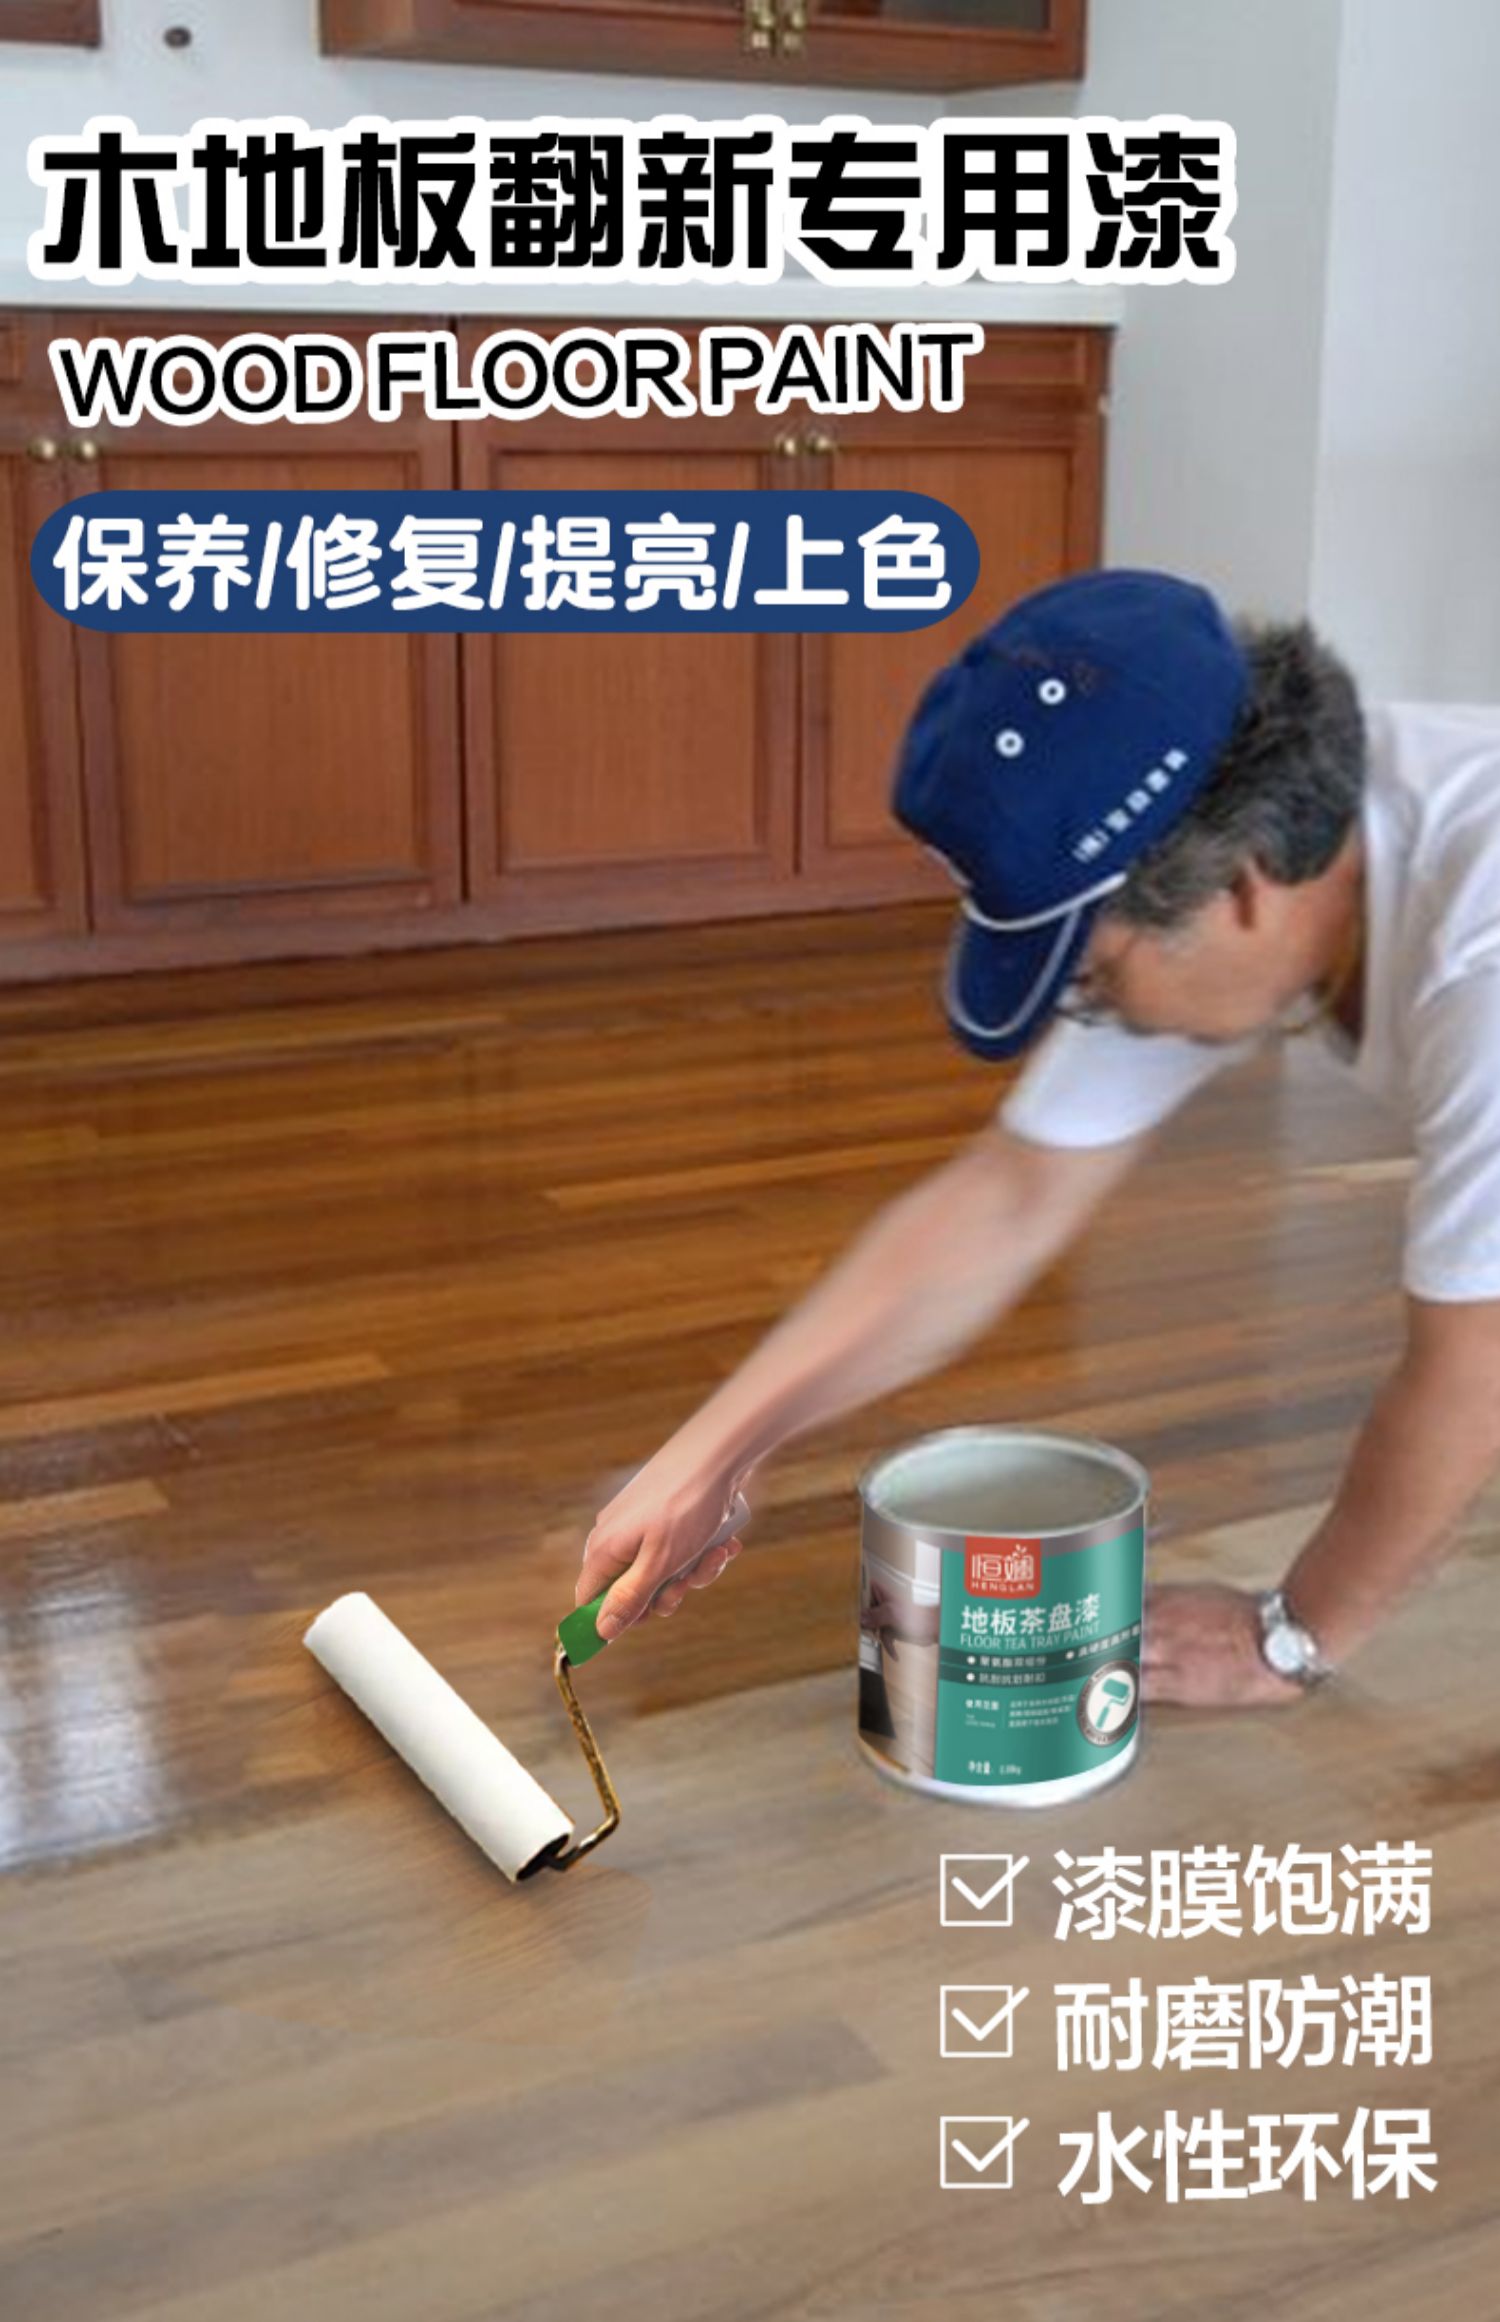 木地板维修多少钱|上海浦东区木地板维修价格上海木地板翻新处理中心